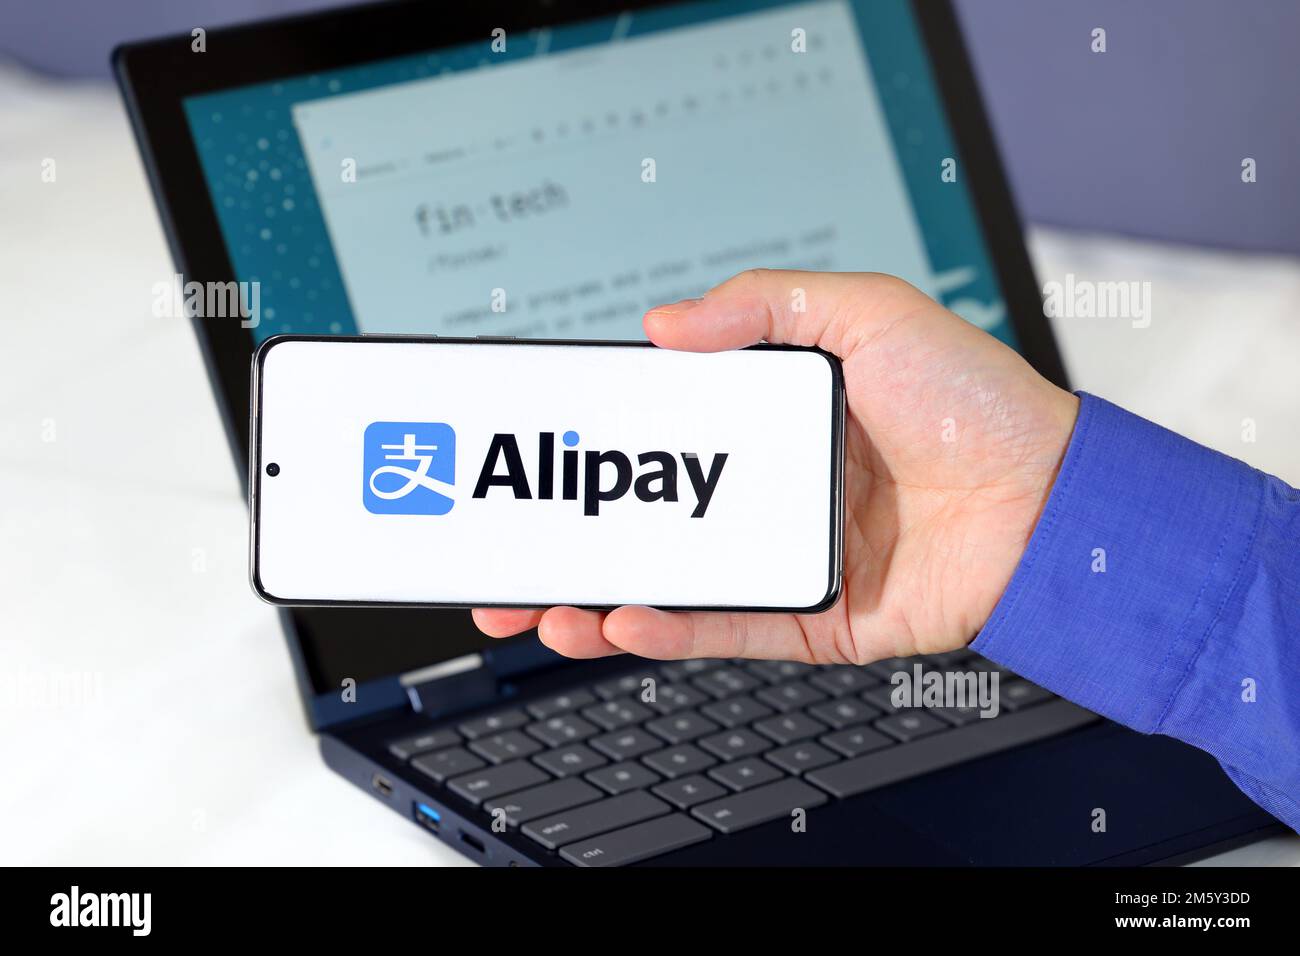 Logo d'Alipay sur un smartphone devant un ordinateur. Alipay 支付宝 est un portefeuille mobile, service de paiement numérique basé en Chine. Banque D'Images